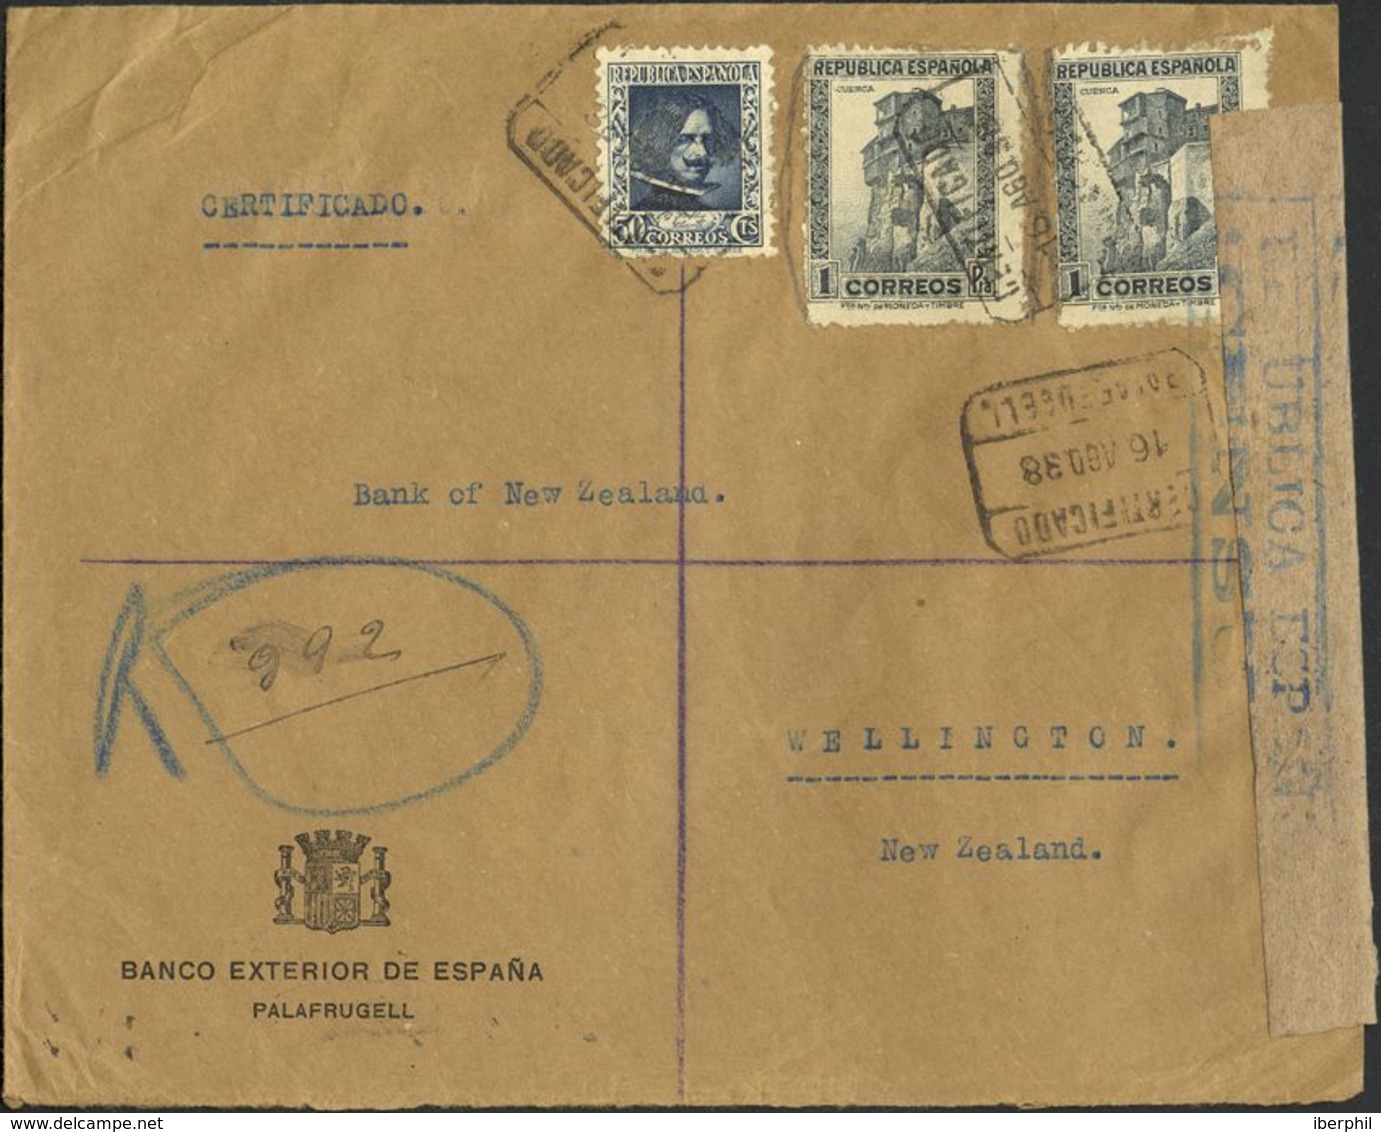 España. República Española Correo Certificado. Sobre 738, 770(2). 1938. 50 Cts. Y 1 Pts., Dos Sellos. PALAFRUGELL A WELL - Lettres & Documents